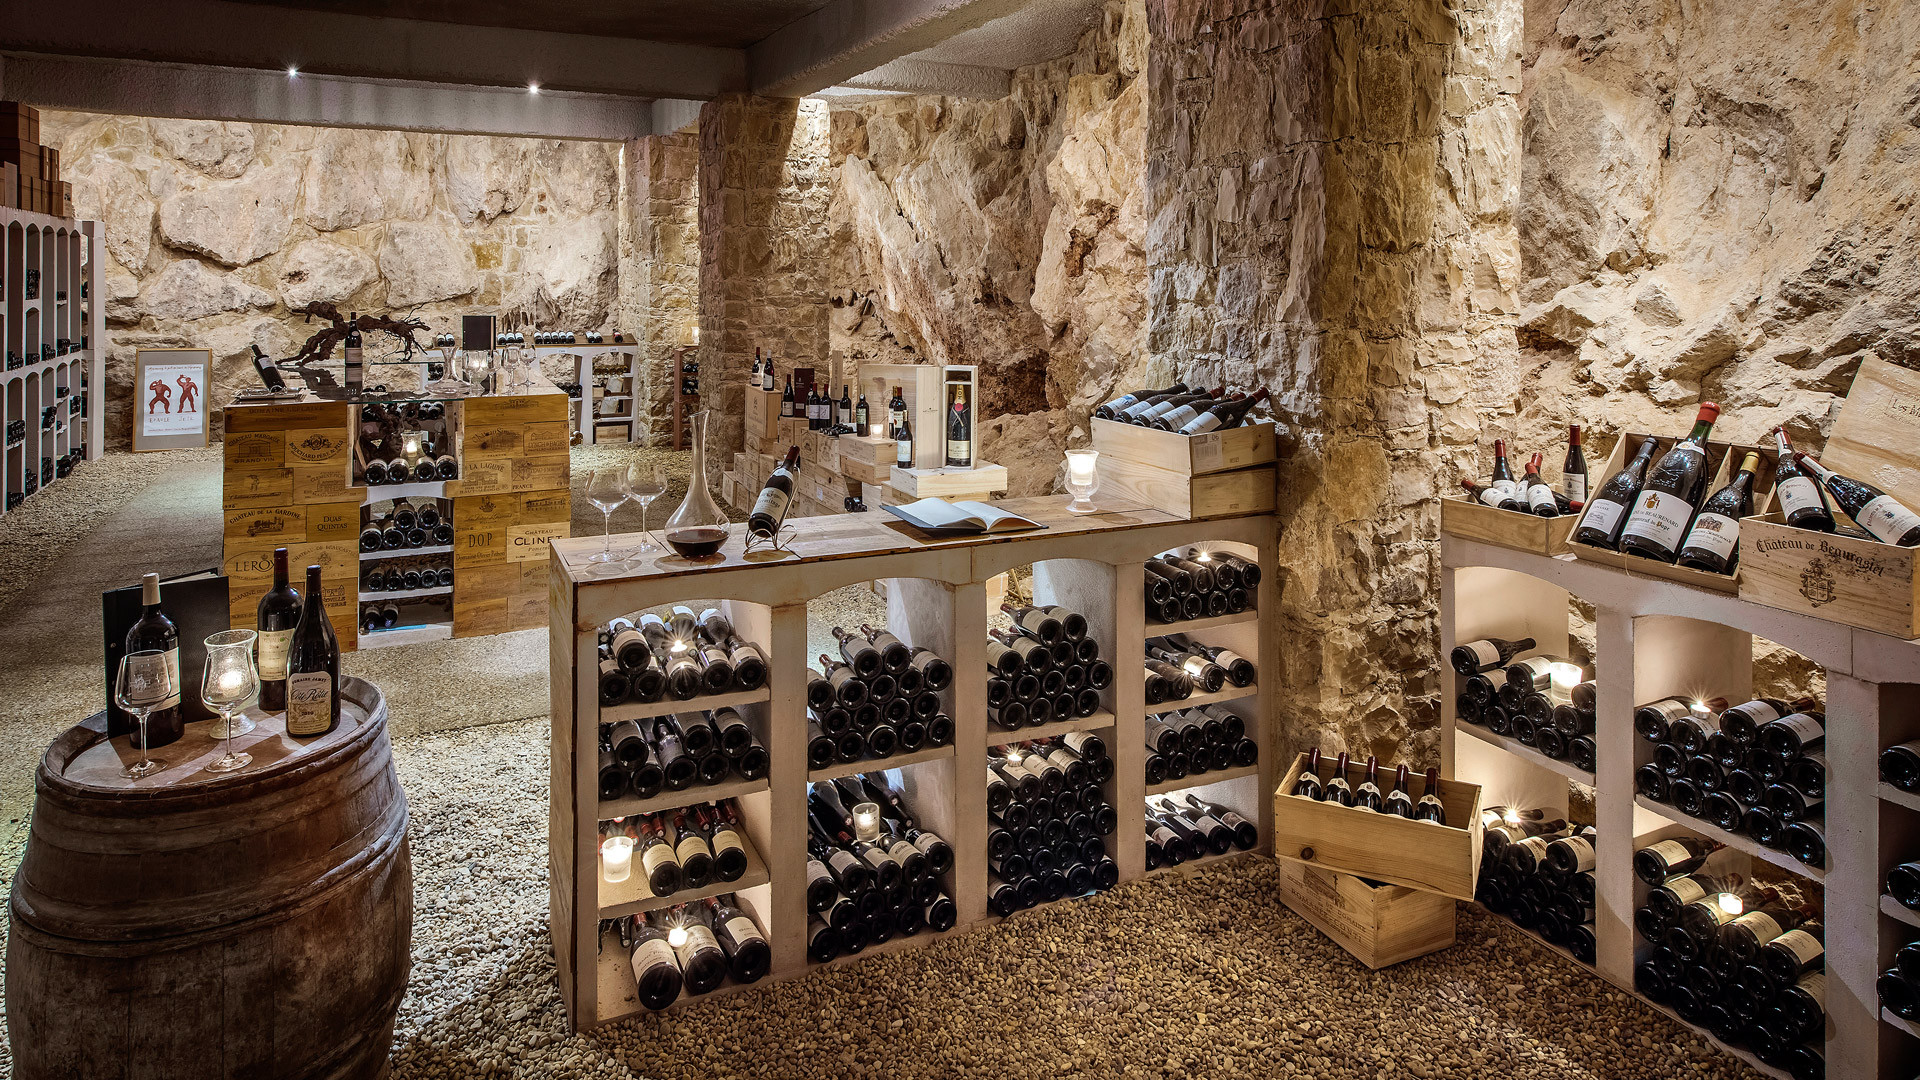 Best ideas about Underground Wine Cellar
. Save or Pin Underground Wine Cellar Now.